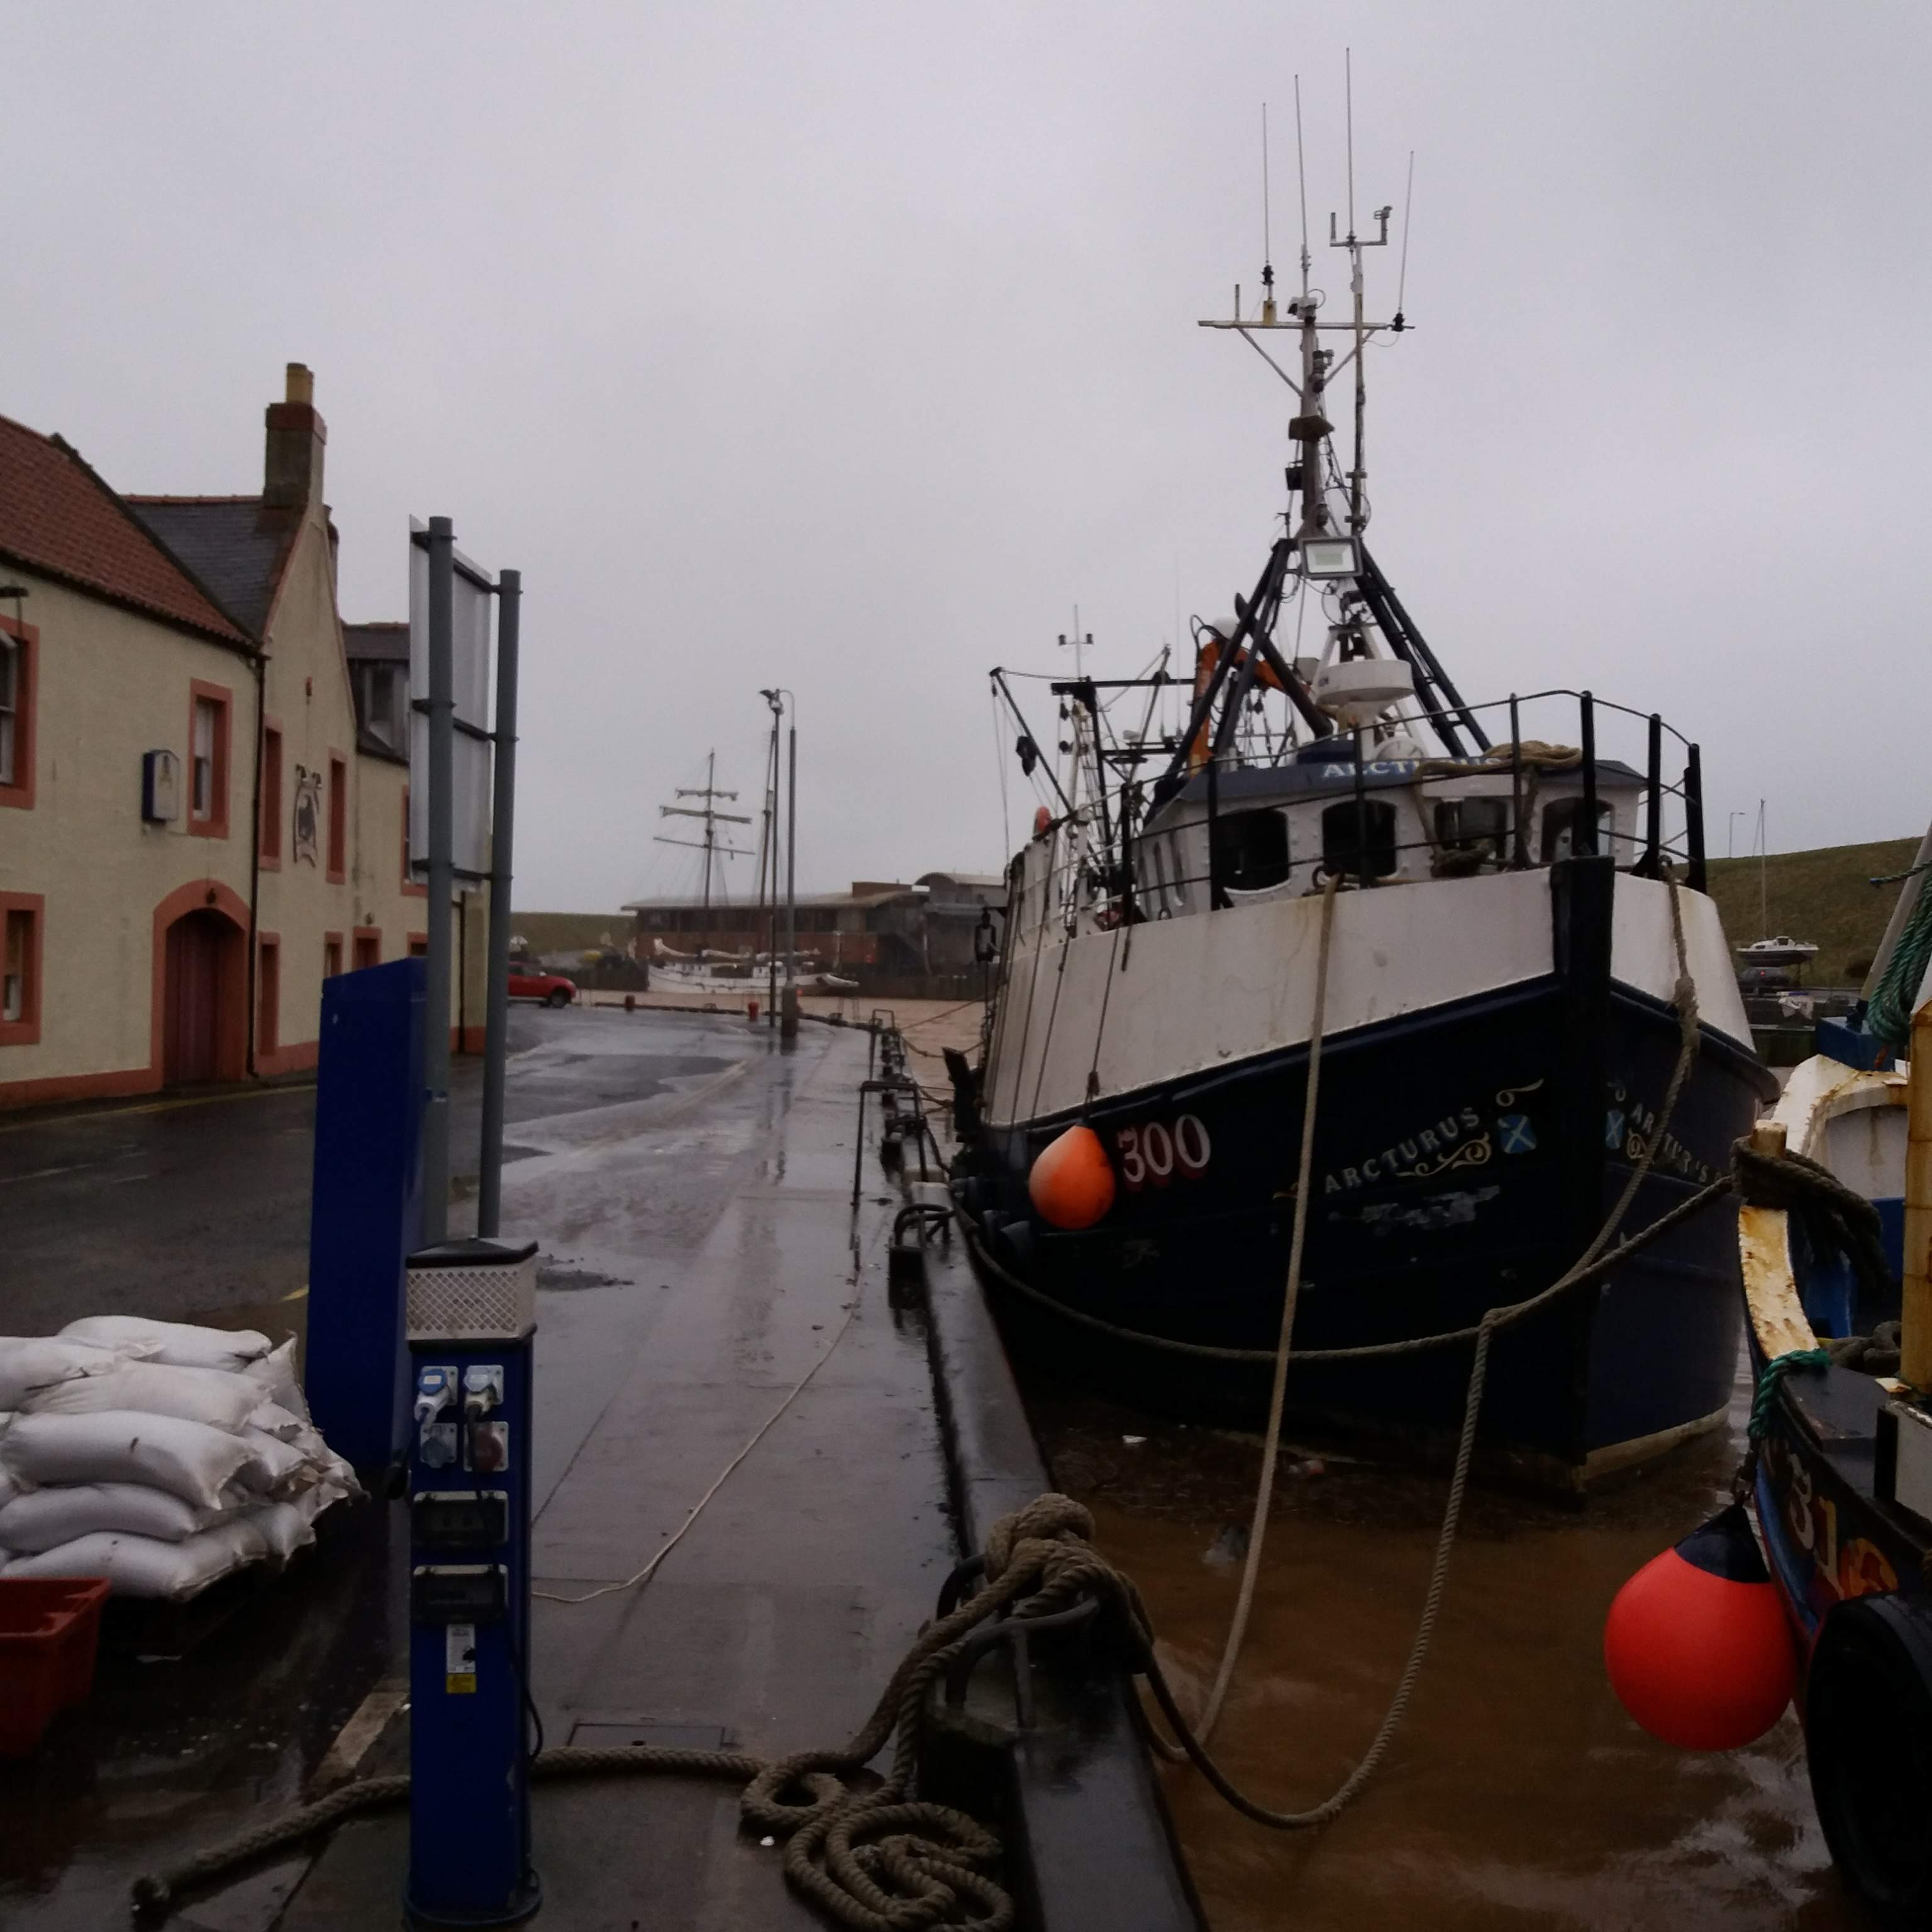 Commercial fishing (Netting)  Berwickshire & Northumberland Marine Nature  Partnership